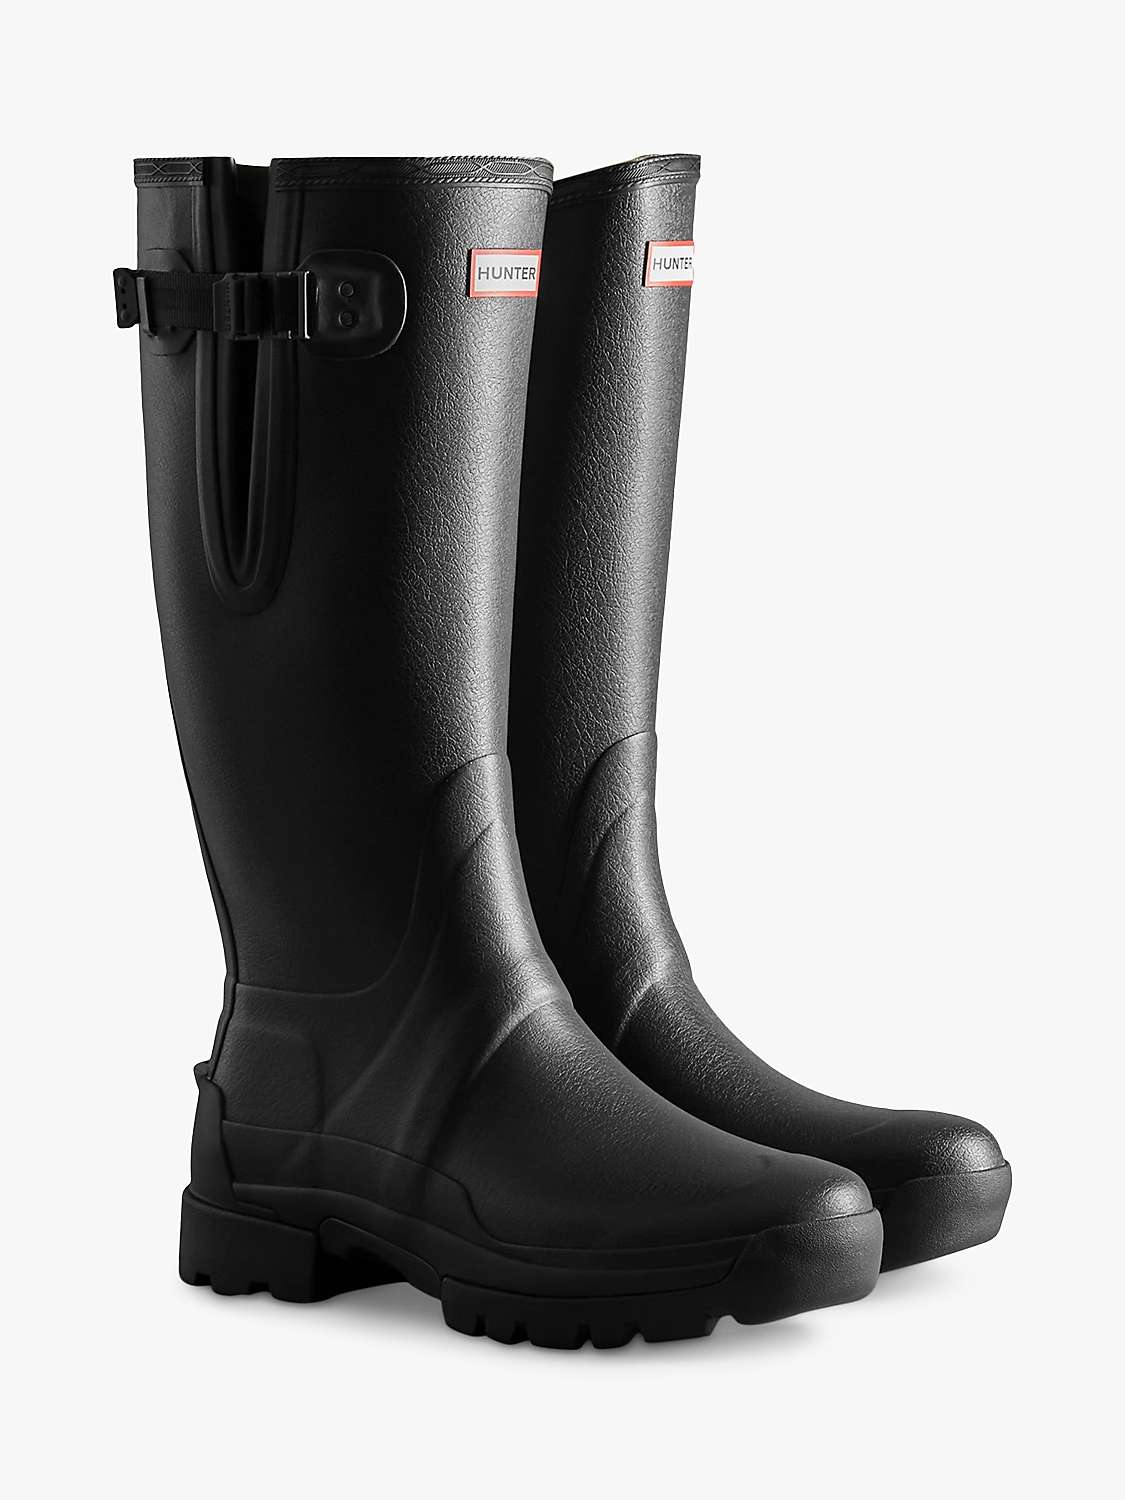 Buy Hunter Men's Balmoral Adjustable Wellington Boots, Black Online at johnlewis.com